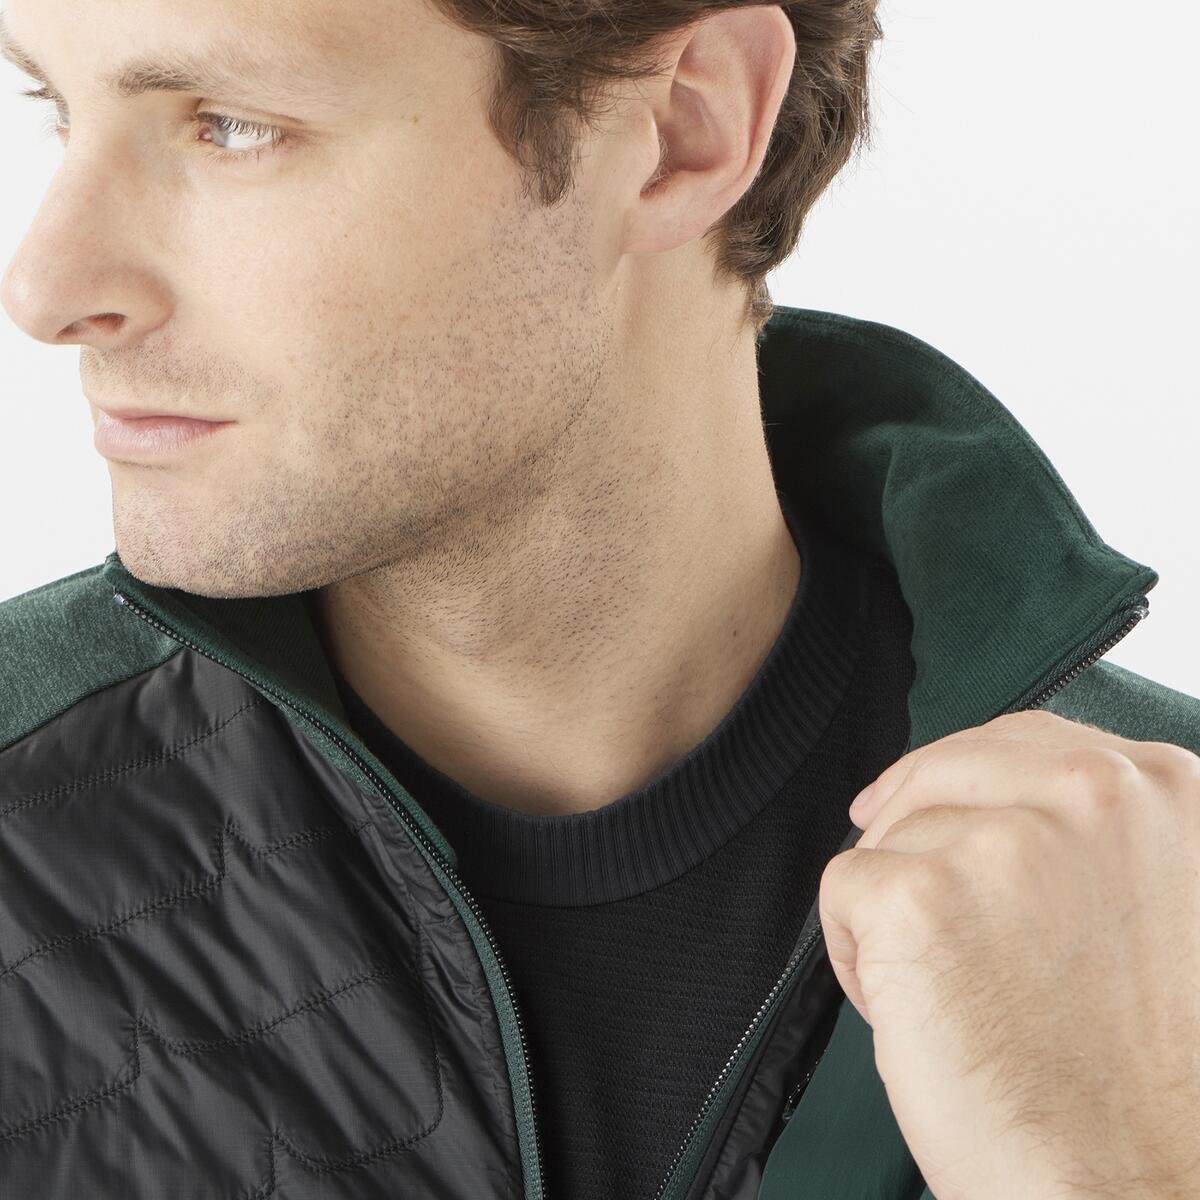 Куртка Salomon Mountain Hybrid Mid M Jacket - зелена